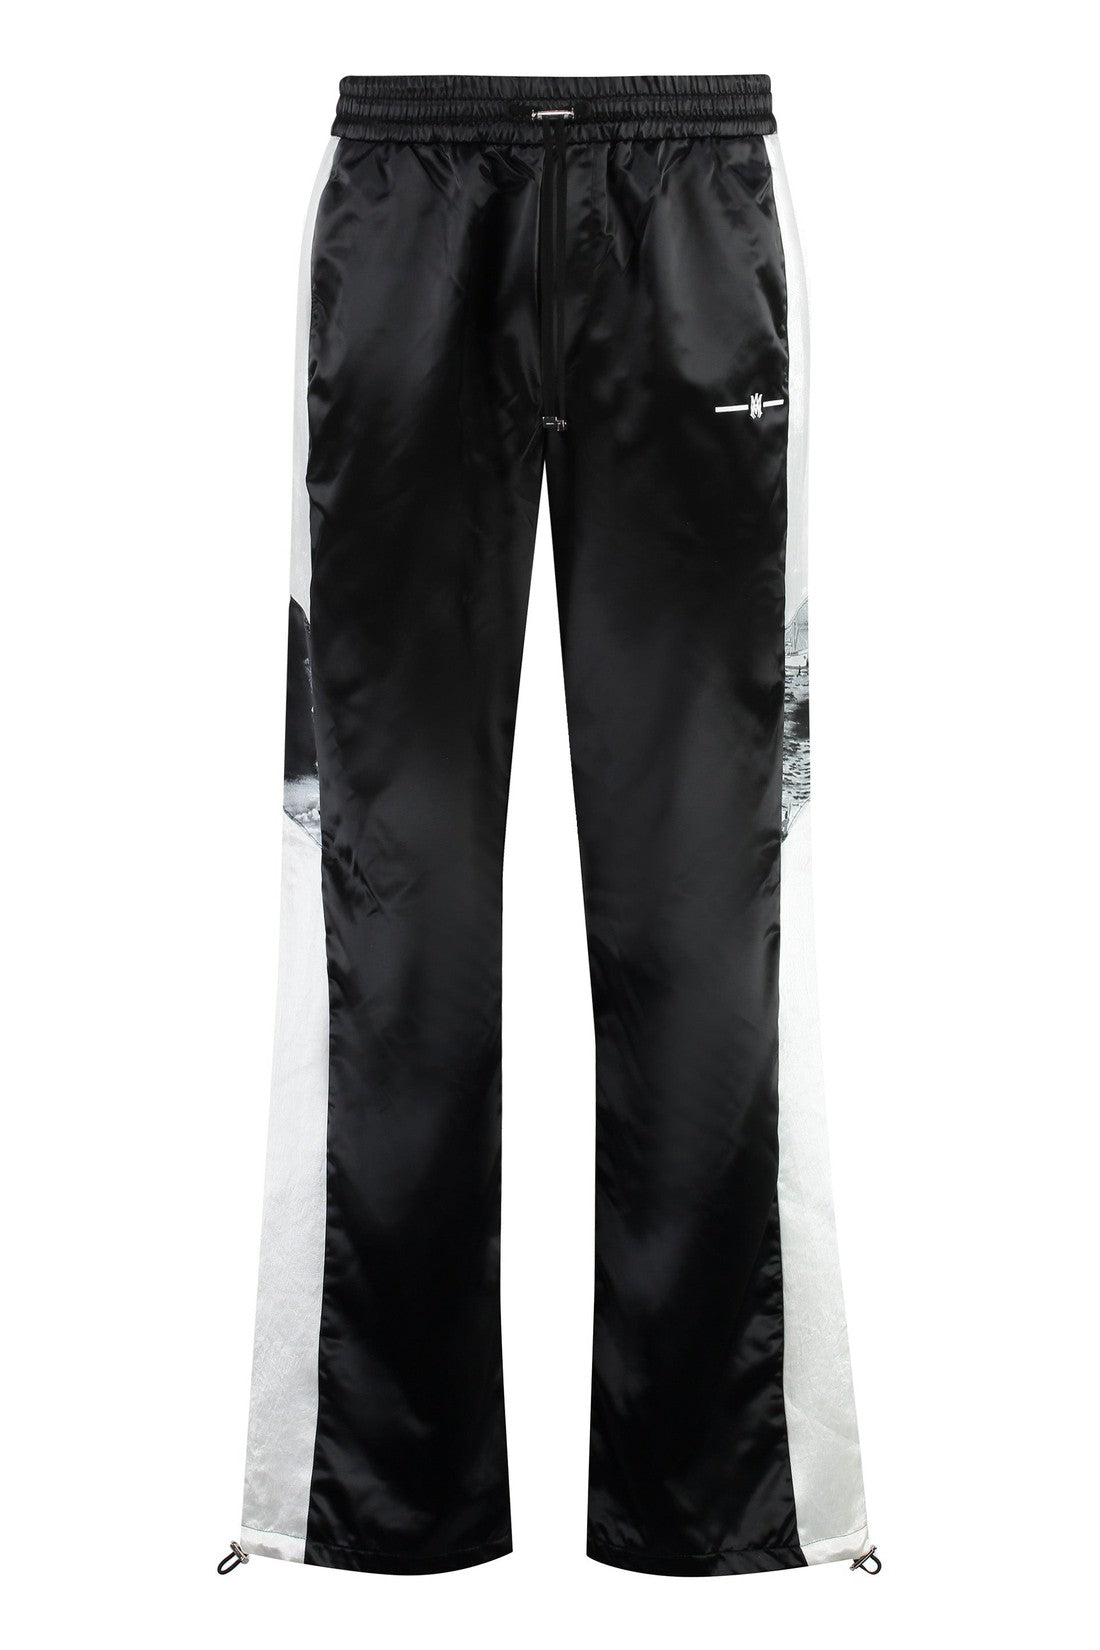 AMIRI-OUTLET-SALE-Technical fabric pants-ARCHIVIST